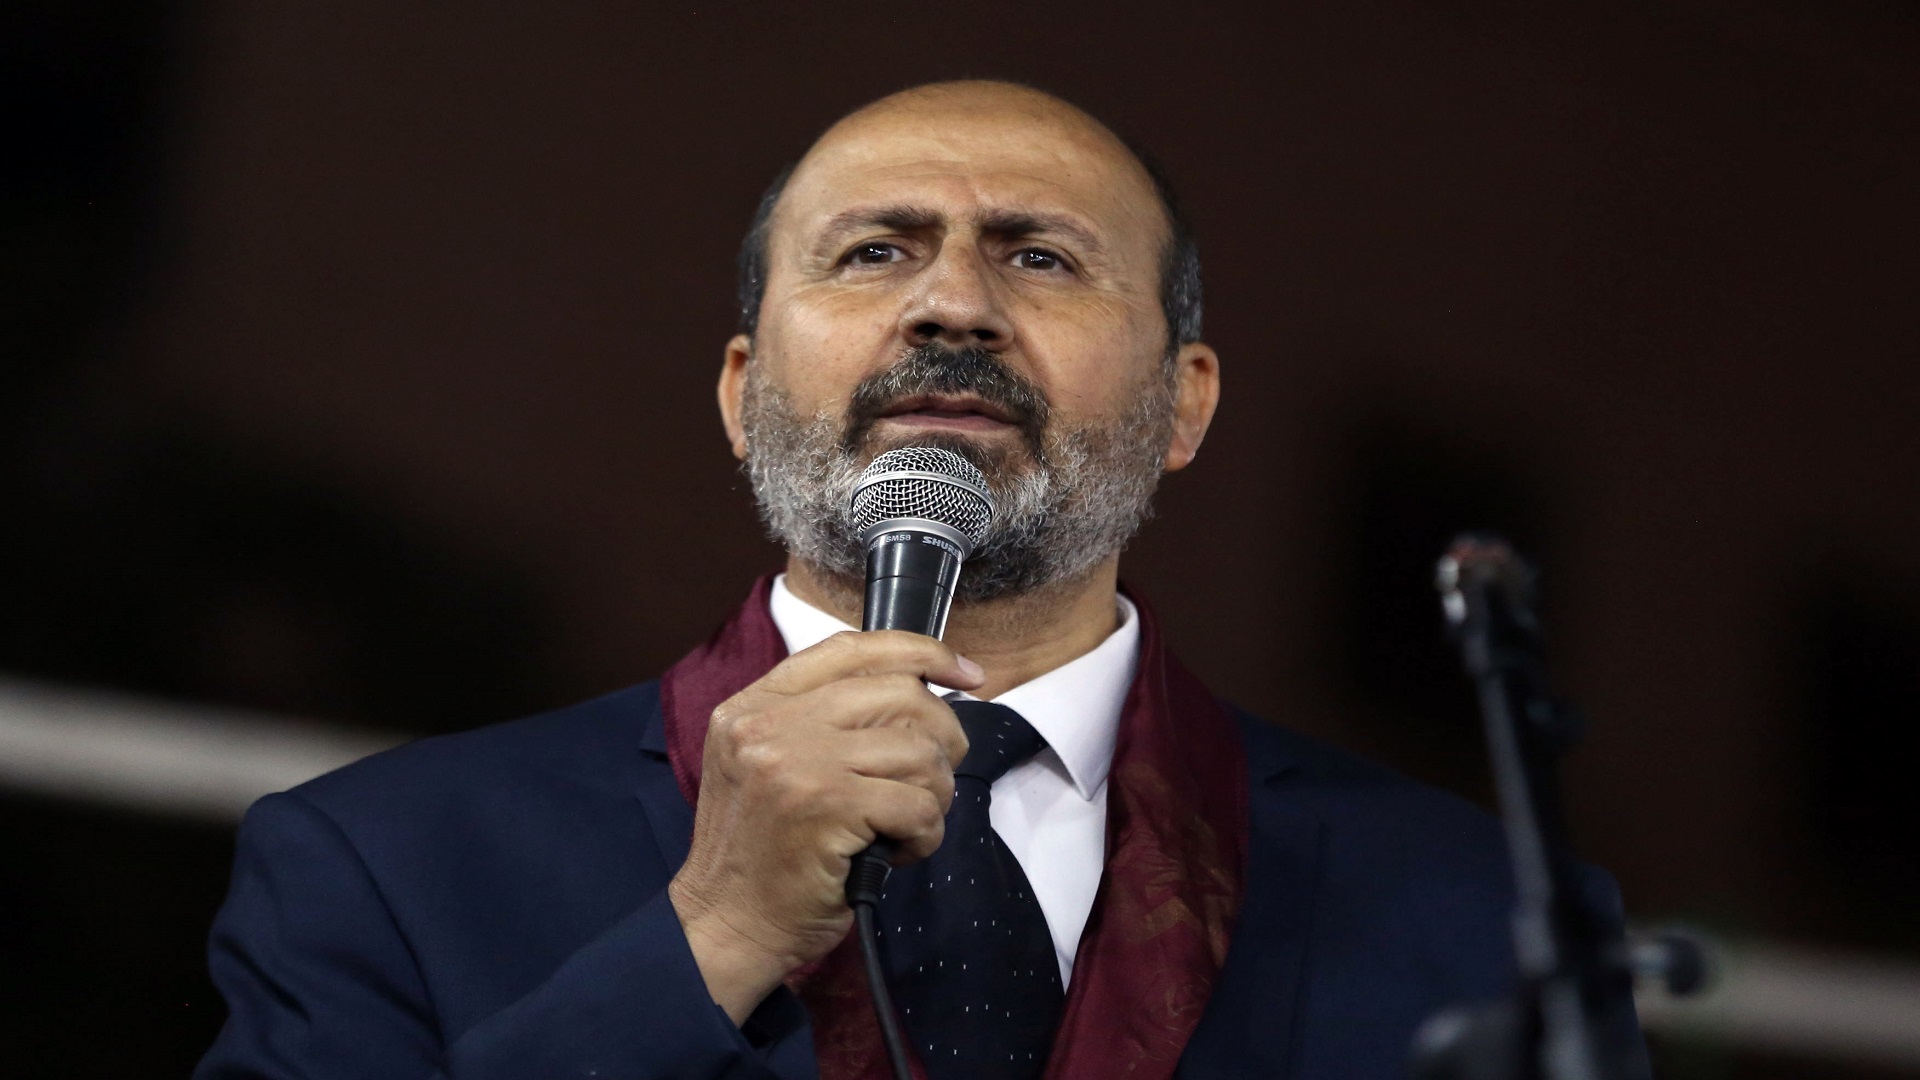 رئيس حزب سياسي في الأردن: هاتفي تعرض للاختراق ببرنامج إسرائيلي